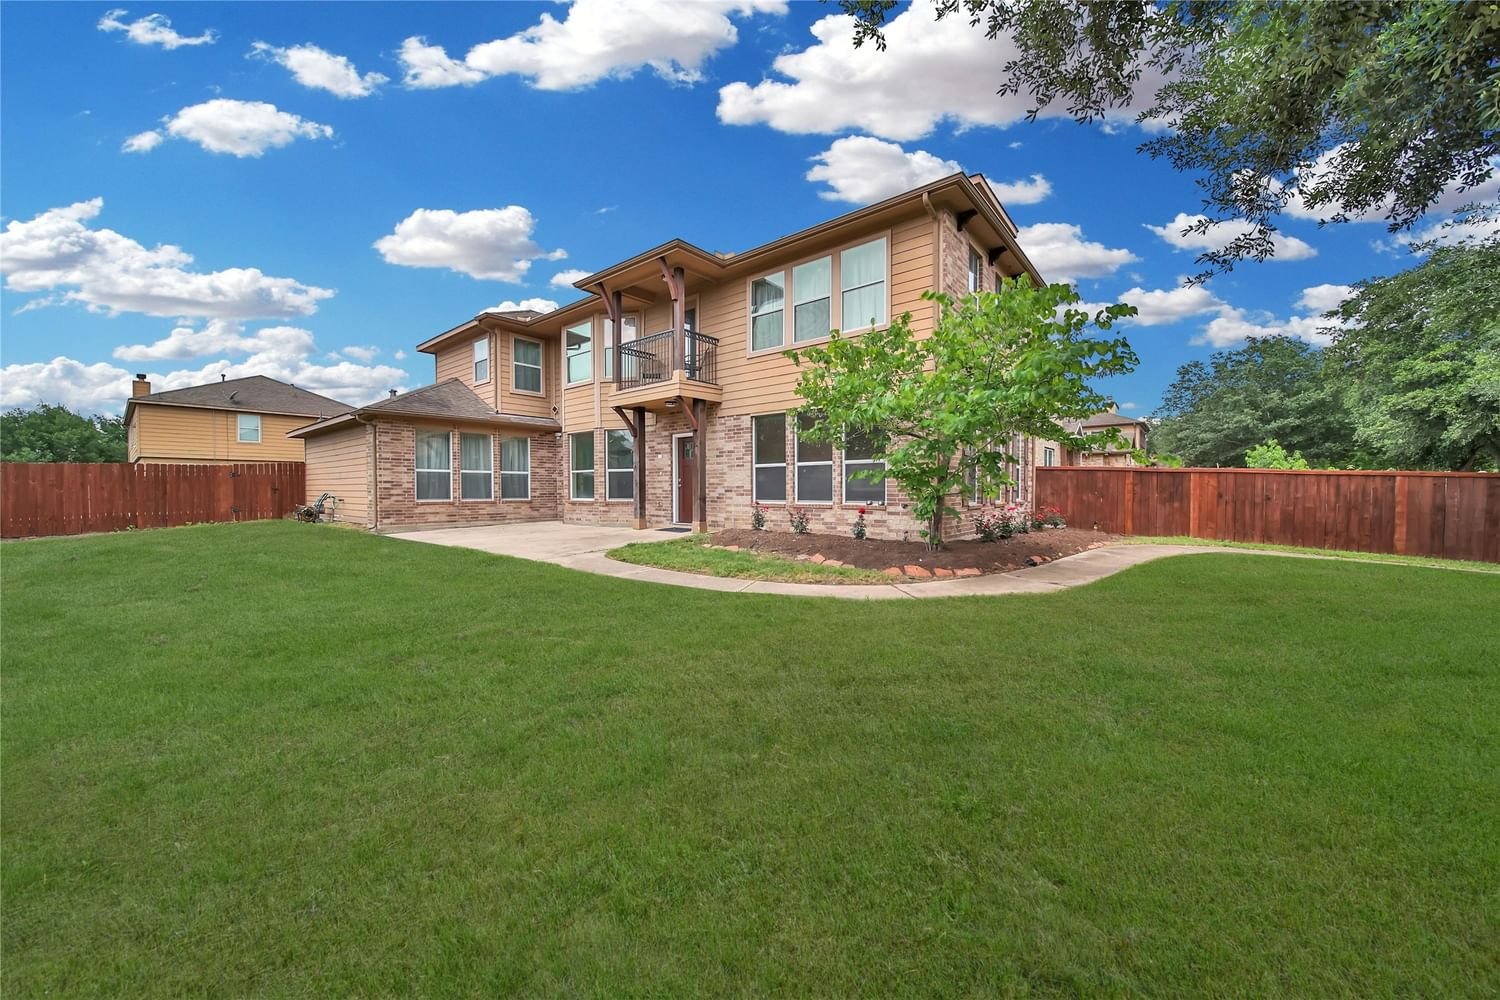 Real estate property located at 8207 Gran Villa, Harris, Villas/Canyon Lakes West Sec 1, Cypress, TX, US